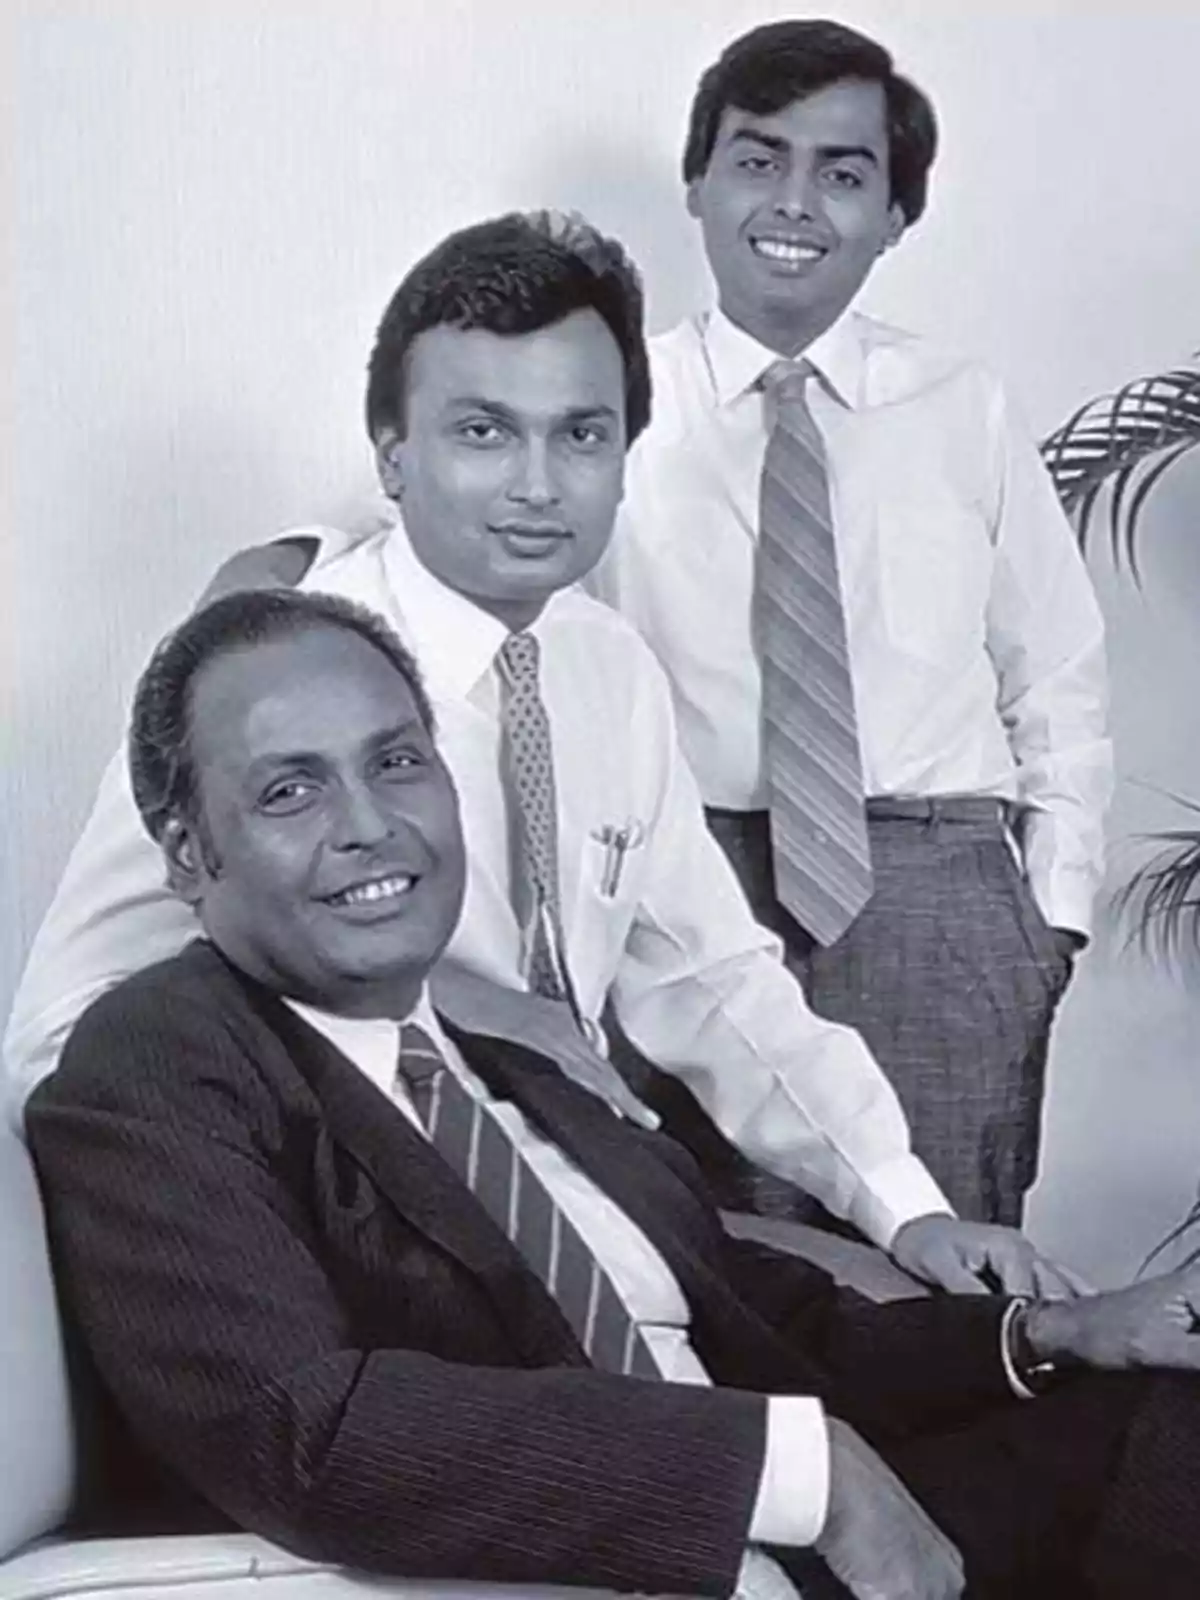 Tres hombres posando juntos, dos de pie y uno sentado, todos vestidos con camisas y corbatas.